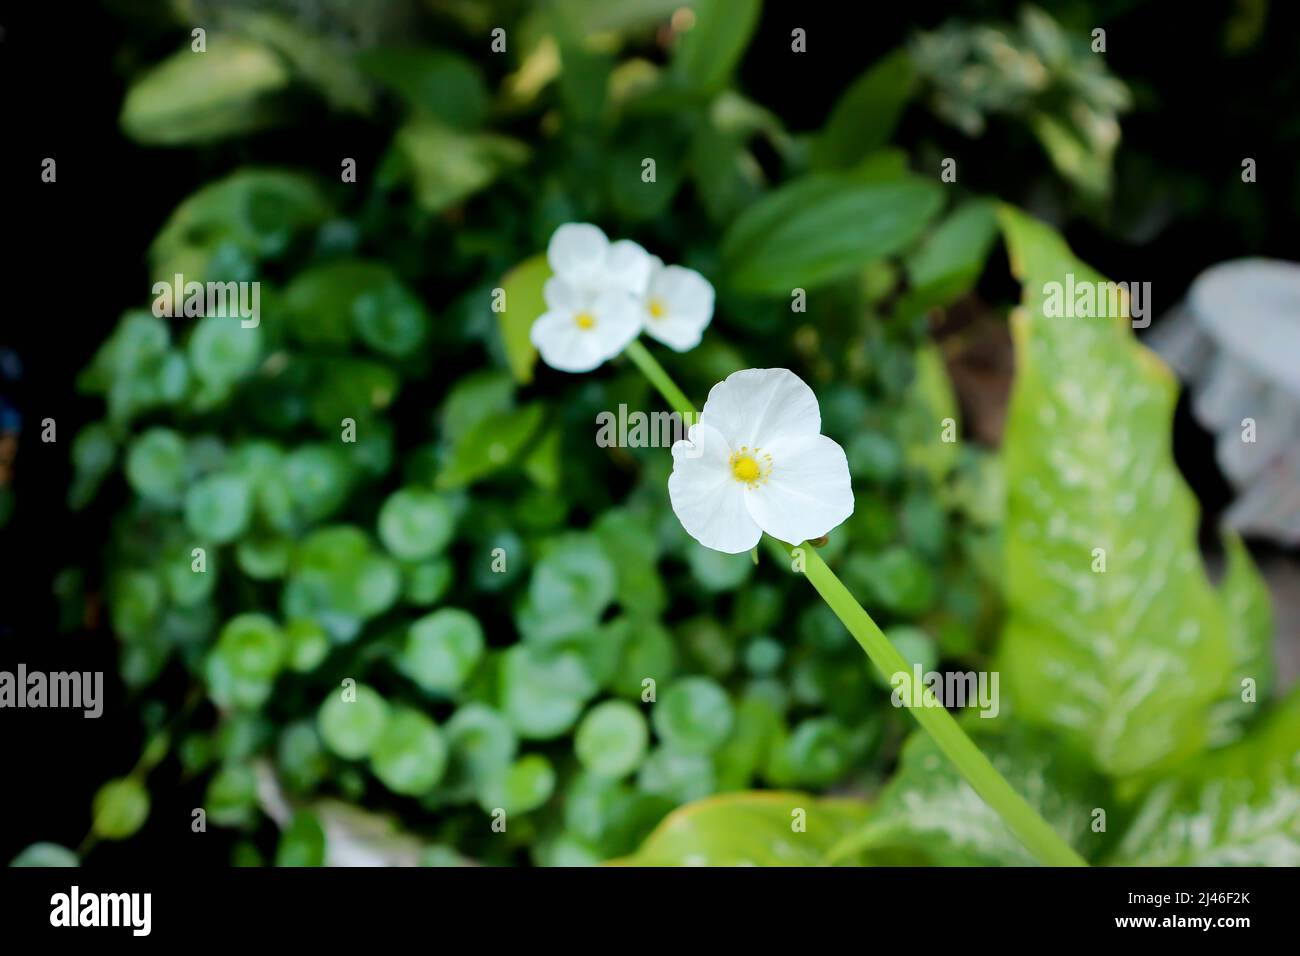 ALISMATACEAE, Burhead or  Echinodorus cordifolius or Texas mud baby or Echinodorus plant Stock Photo